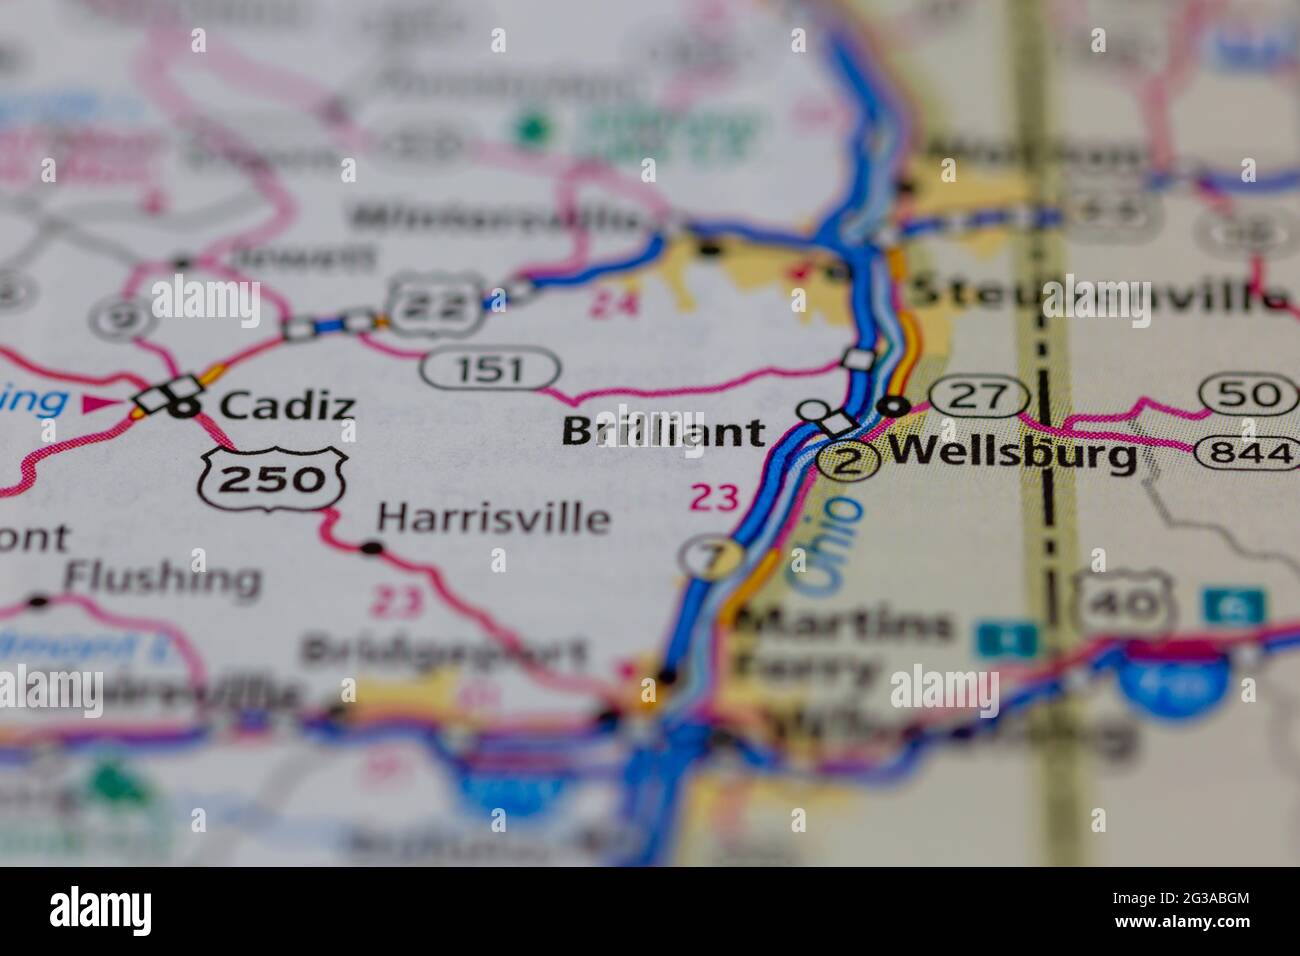 Brilliant Ohio USA montré sur une carte de géographie ou de route Banque D'Images